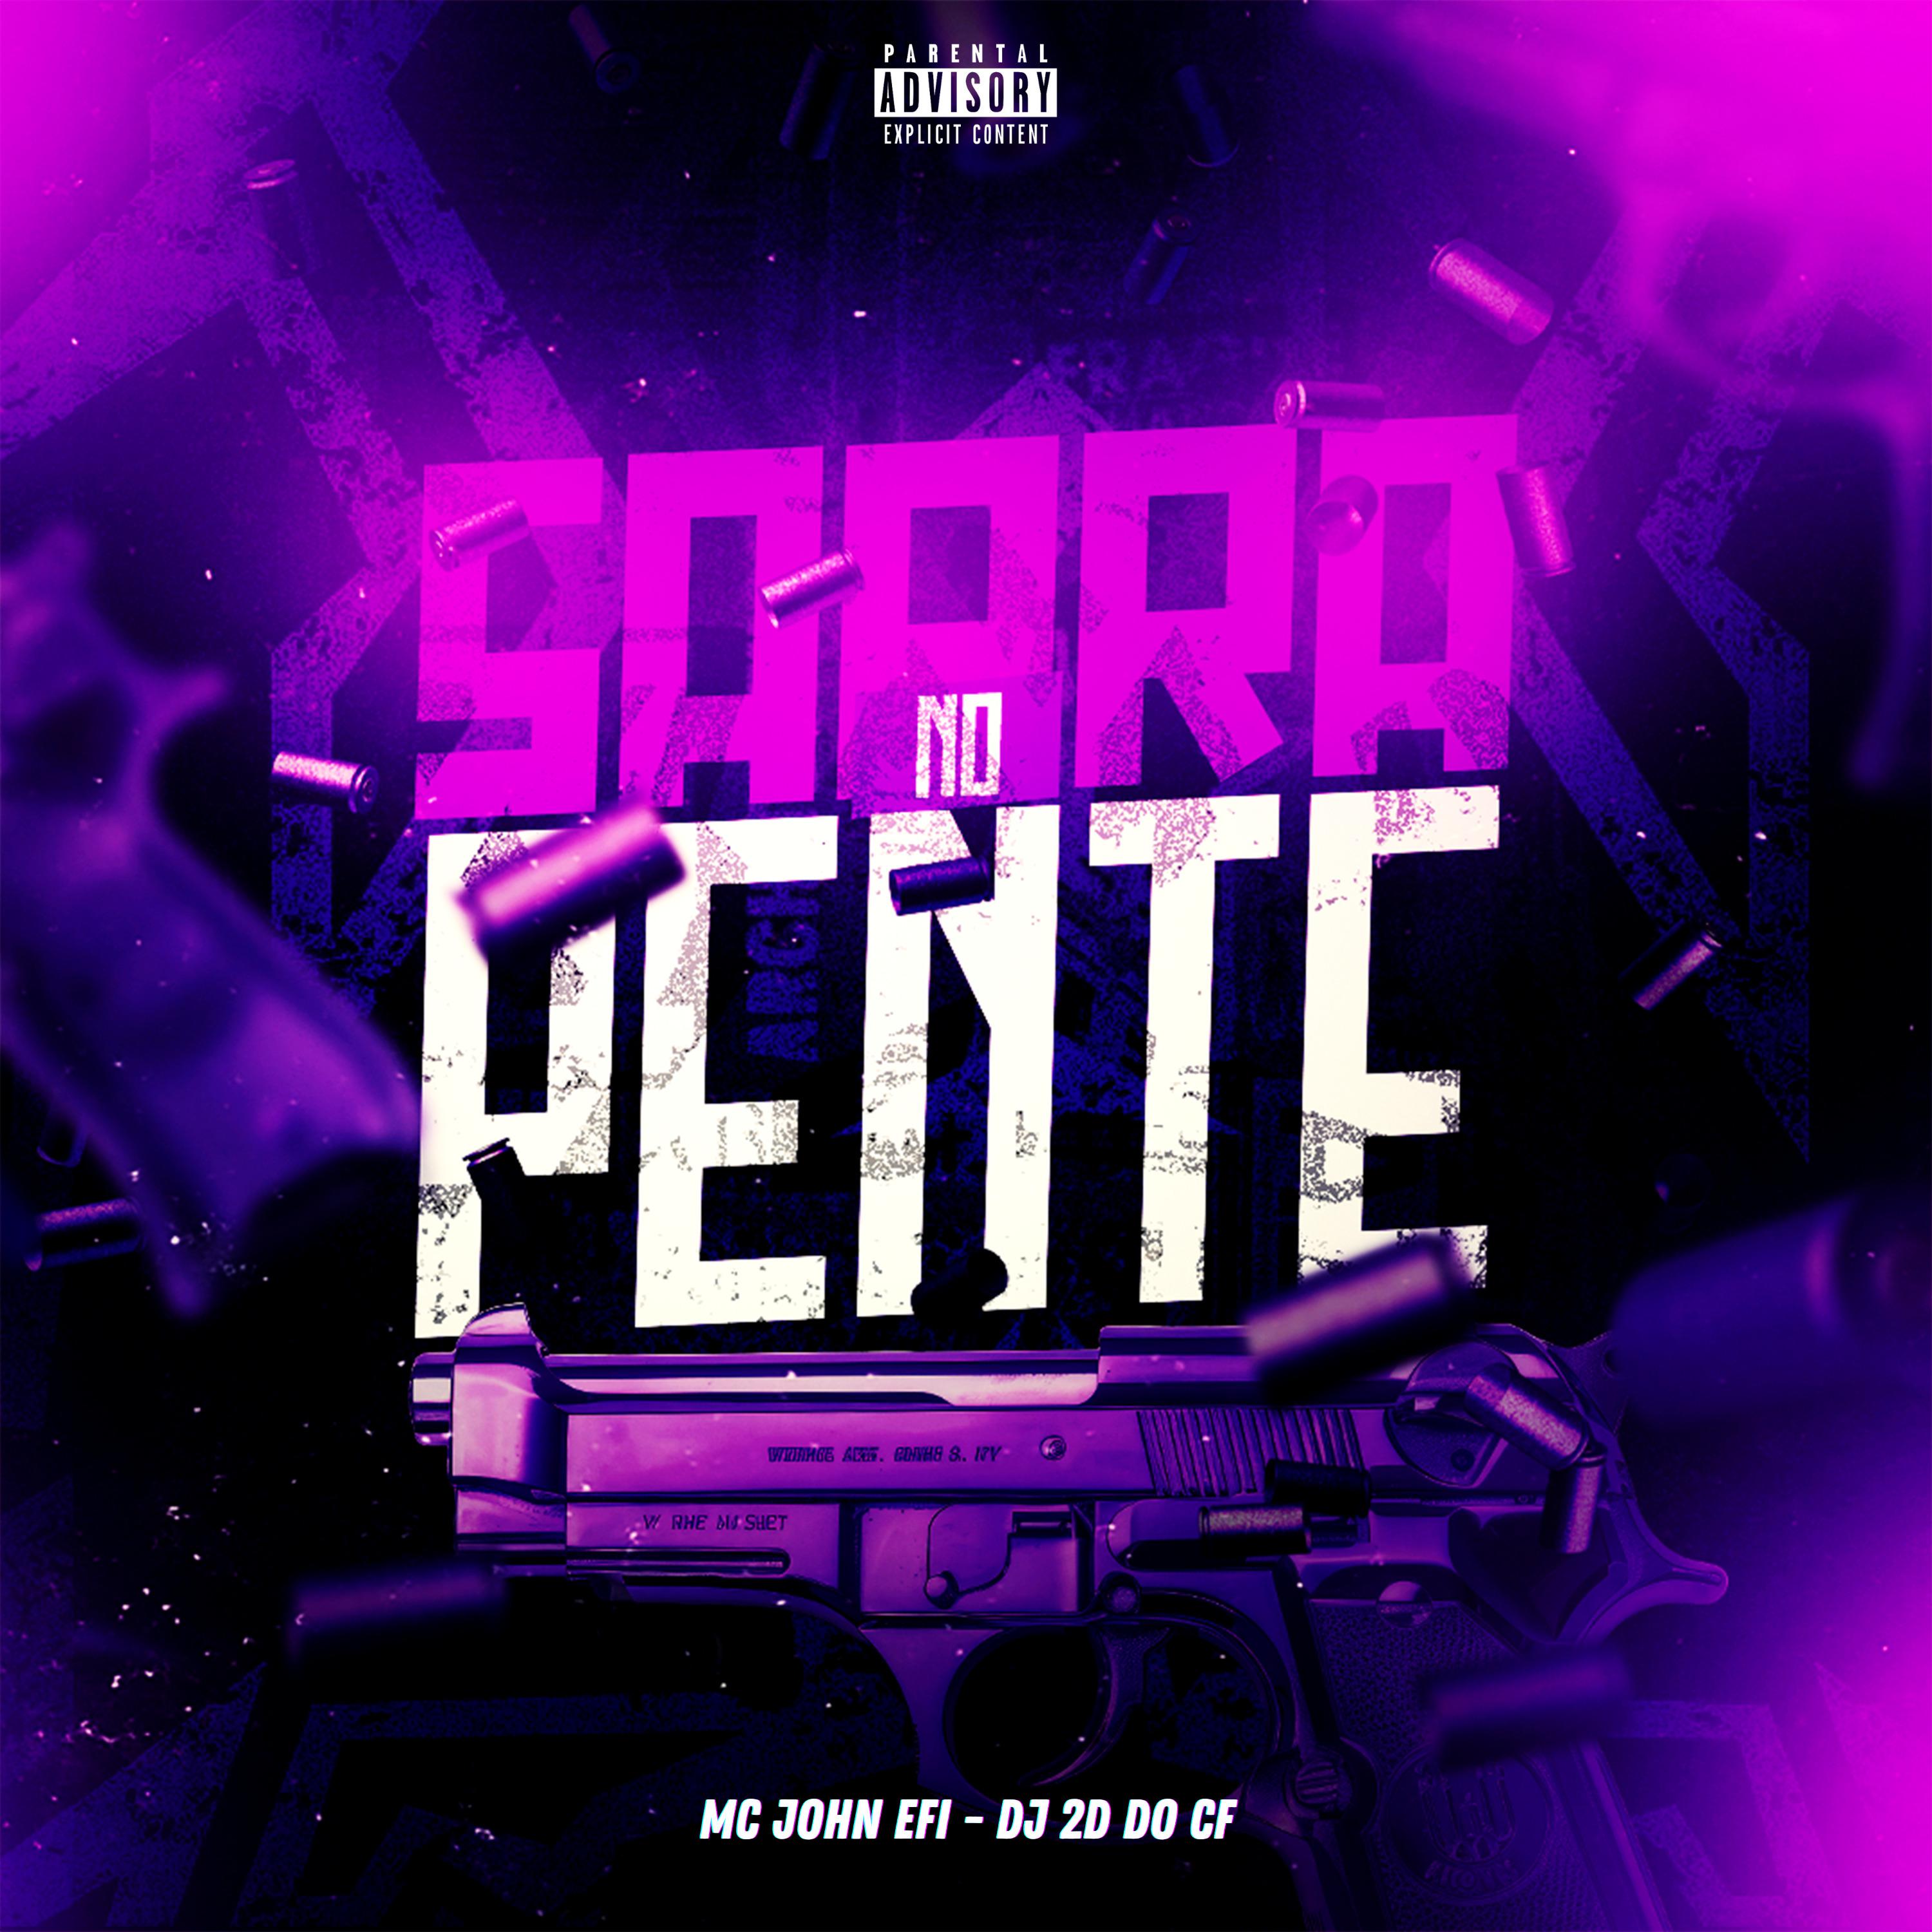 Постер альбома Sarra no Pente